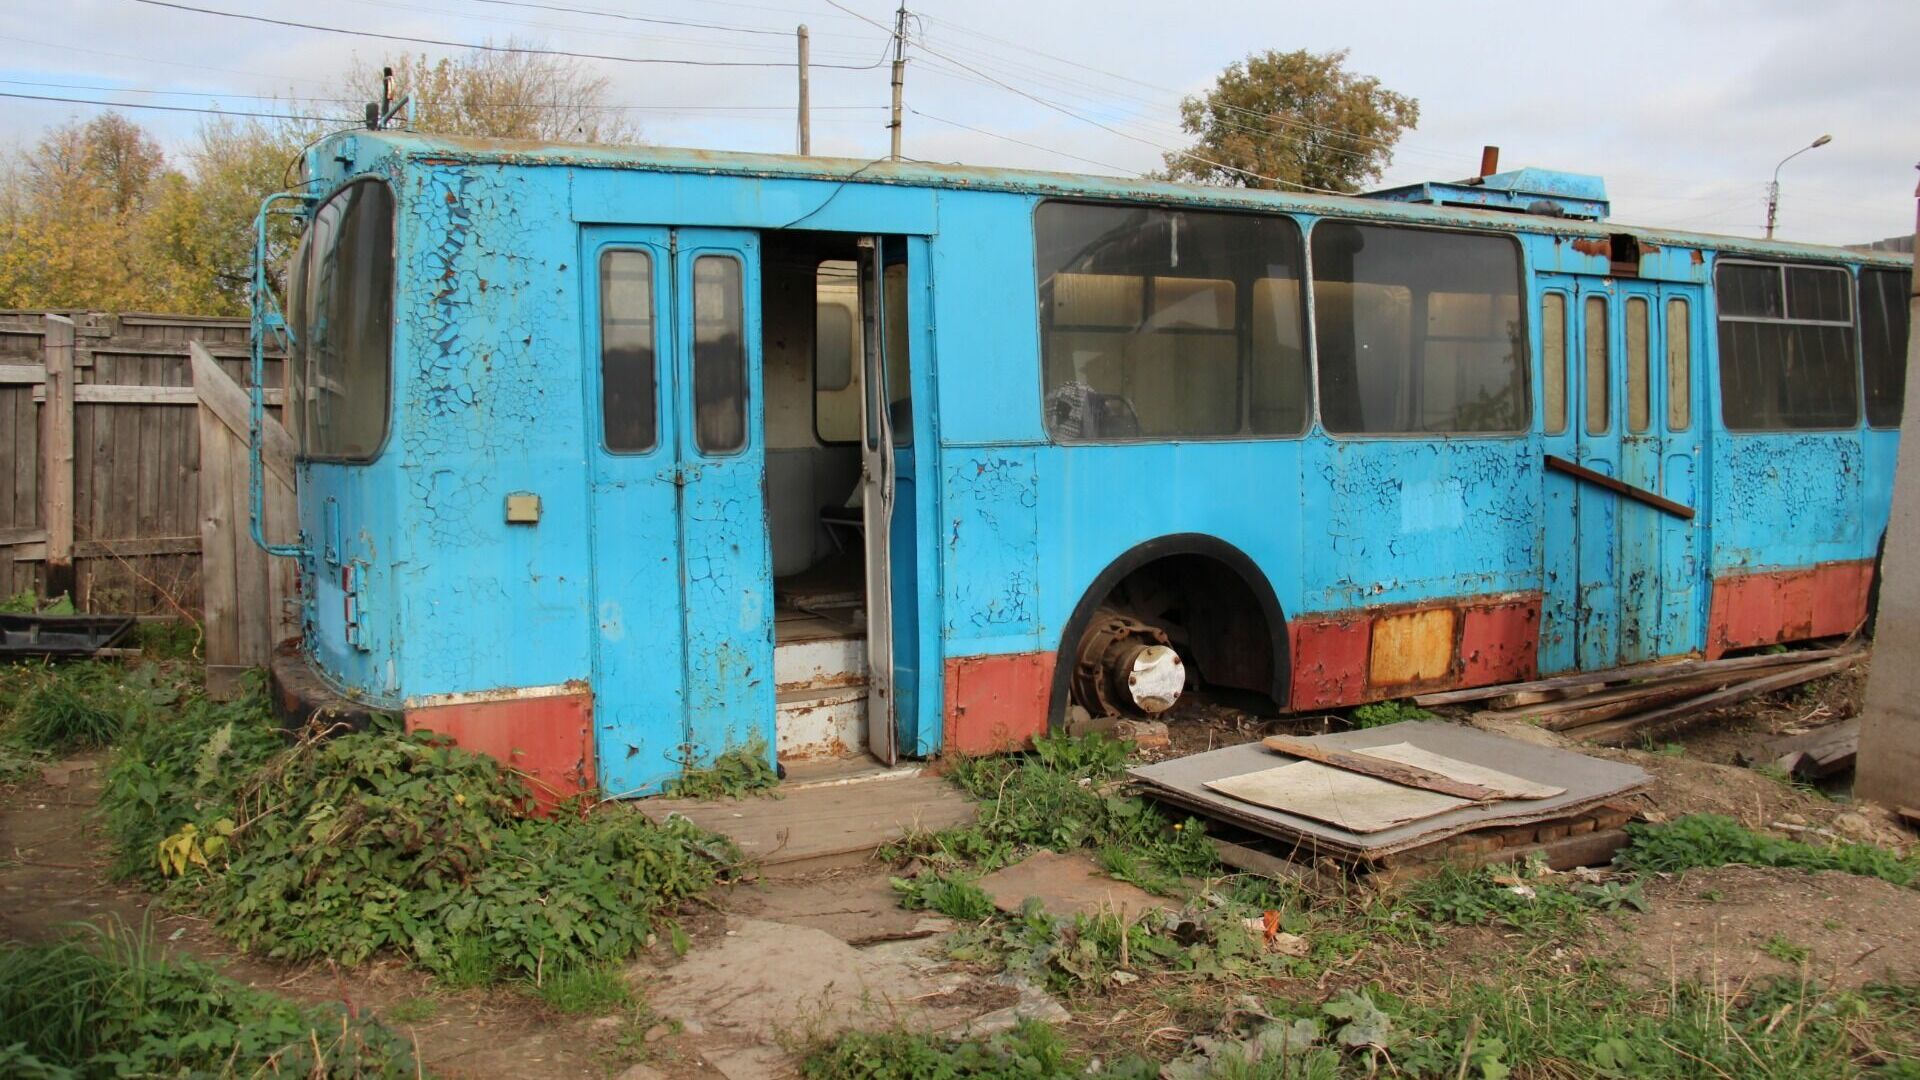 Списанный троллейбус в Костроме отдали в качестве вагончика в ночлежку для бездомных.